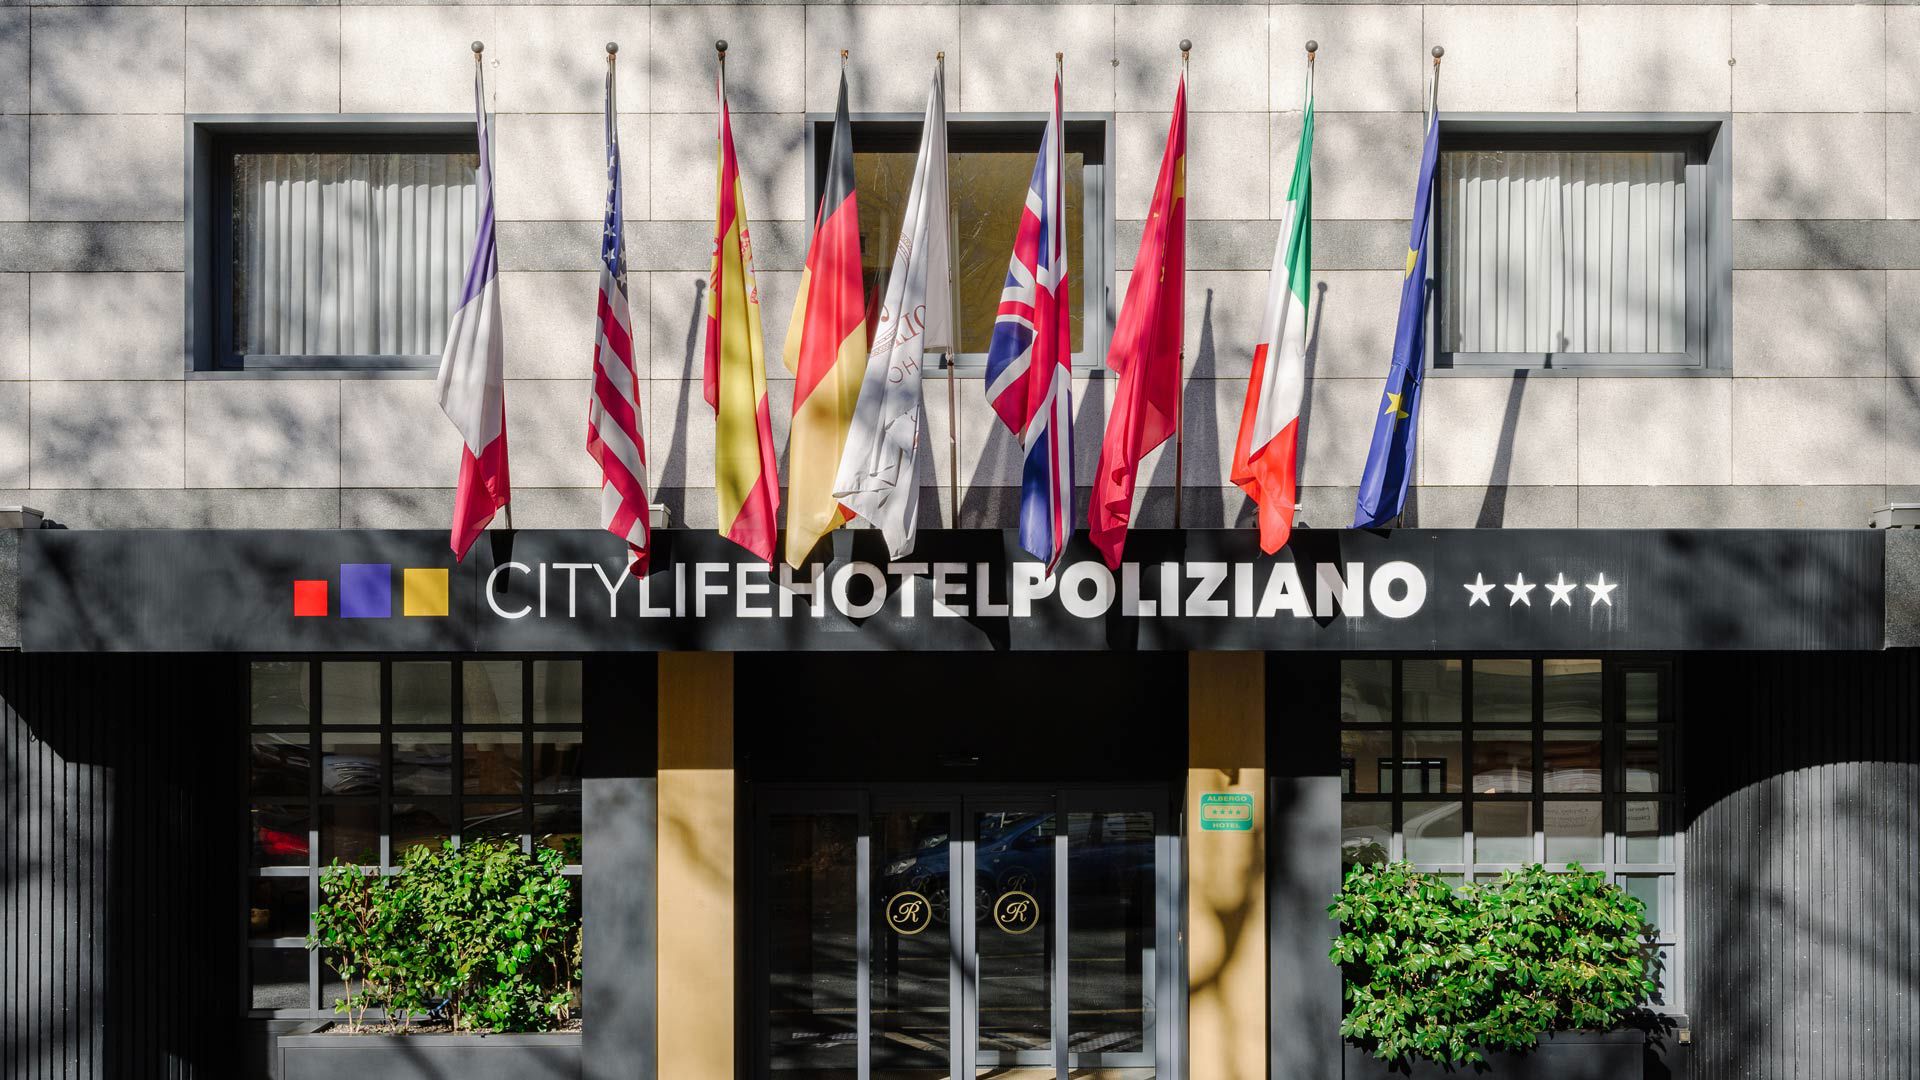 City Life Poliziano - Sustainability 2